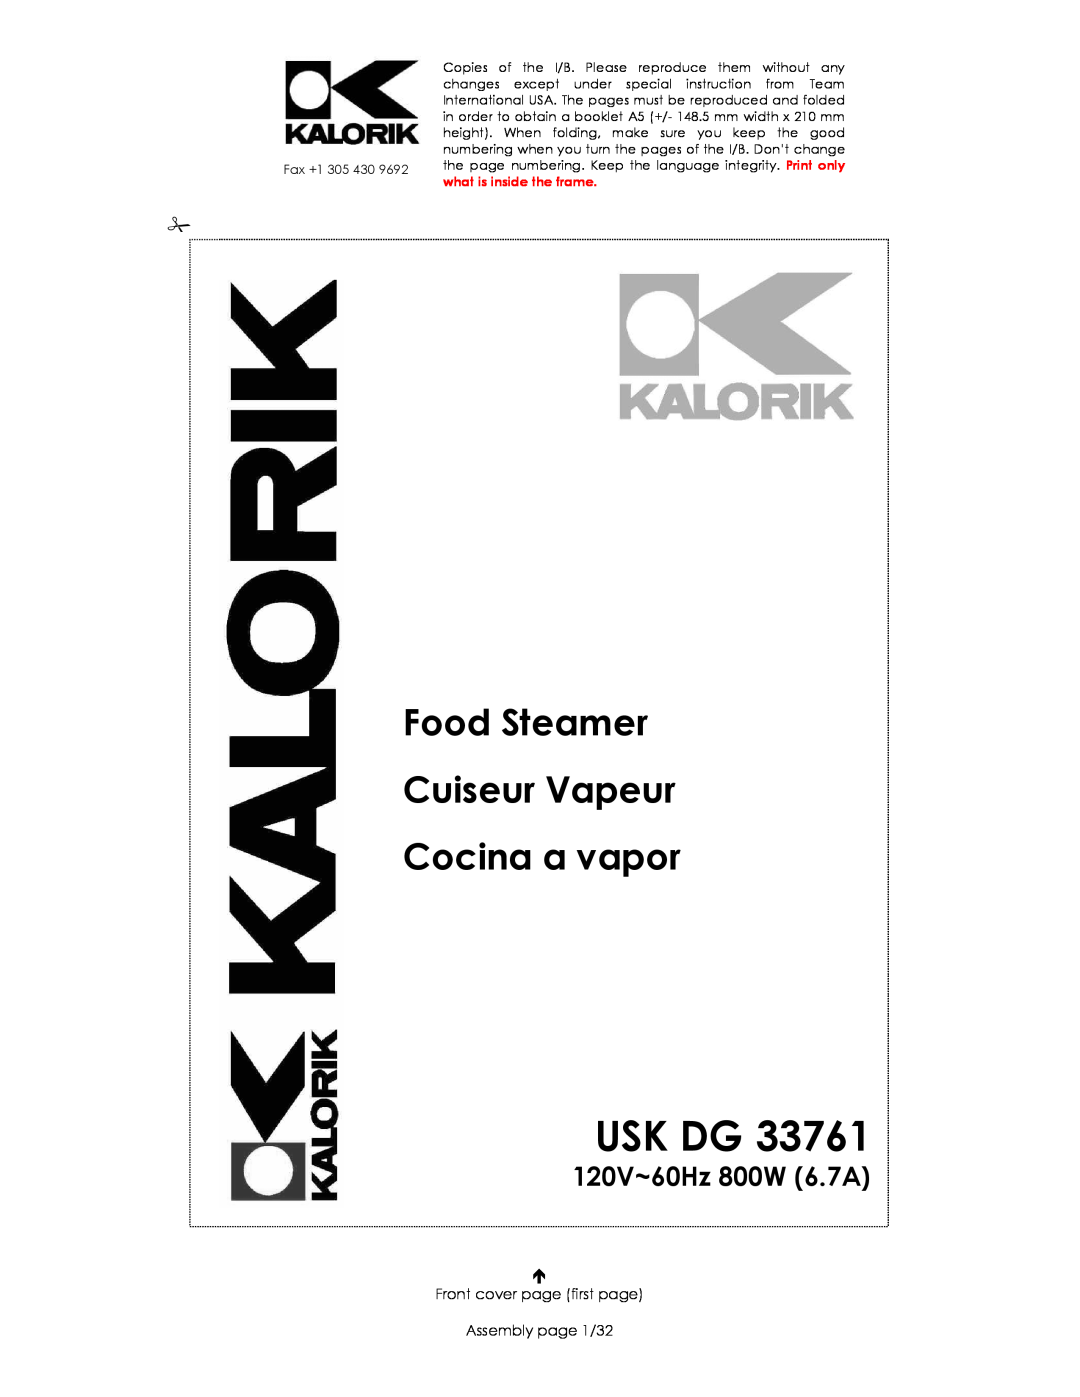 Kalorik USK DG 33761 manual Food Steamer Cuiseur Vapeur Cocina a vapor, 120V~60Hz 800W 6.7A, Usk Dg, Quigg To 